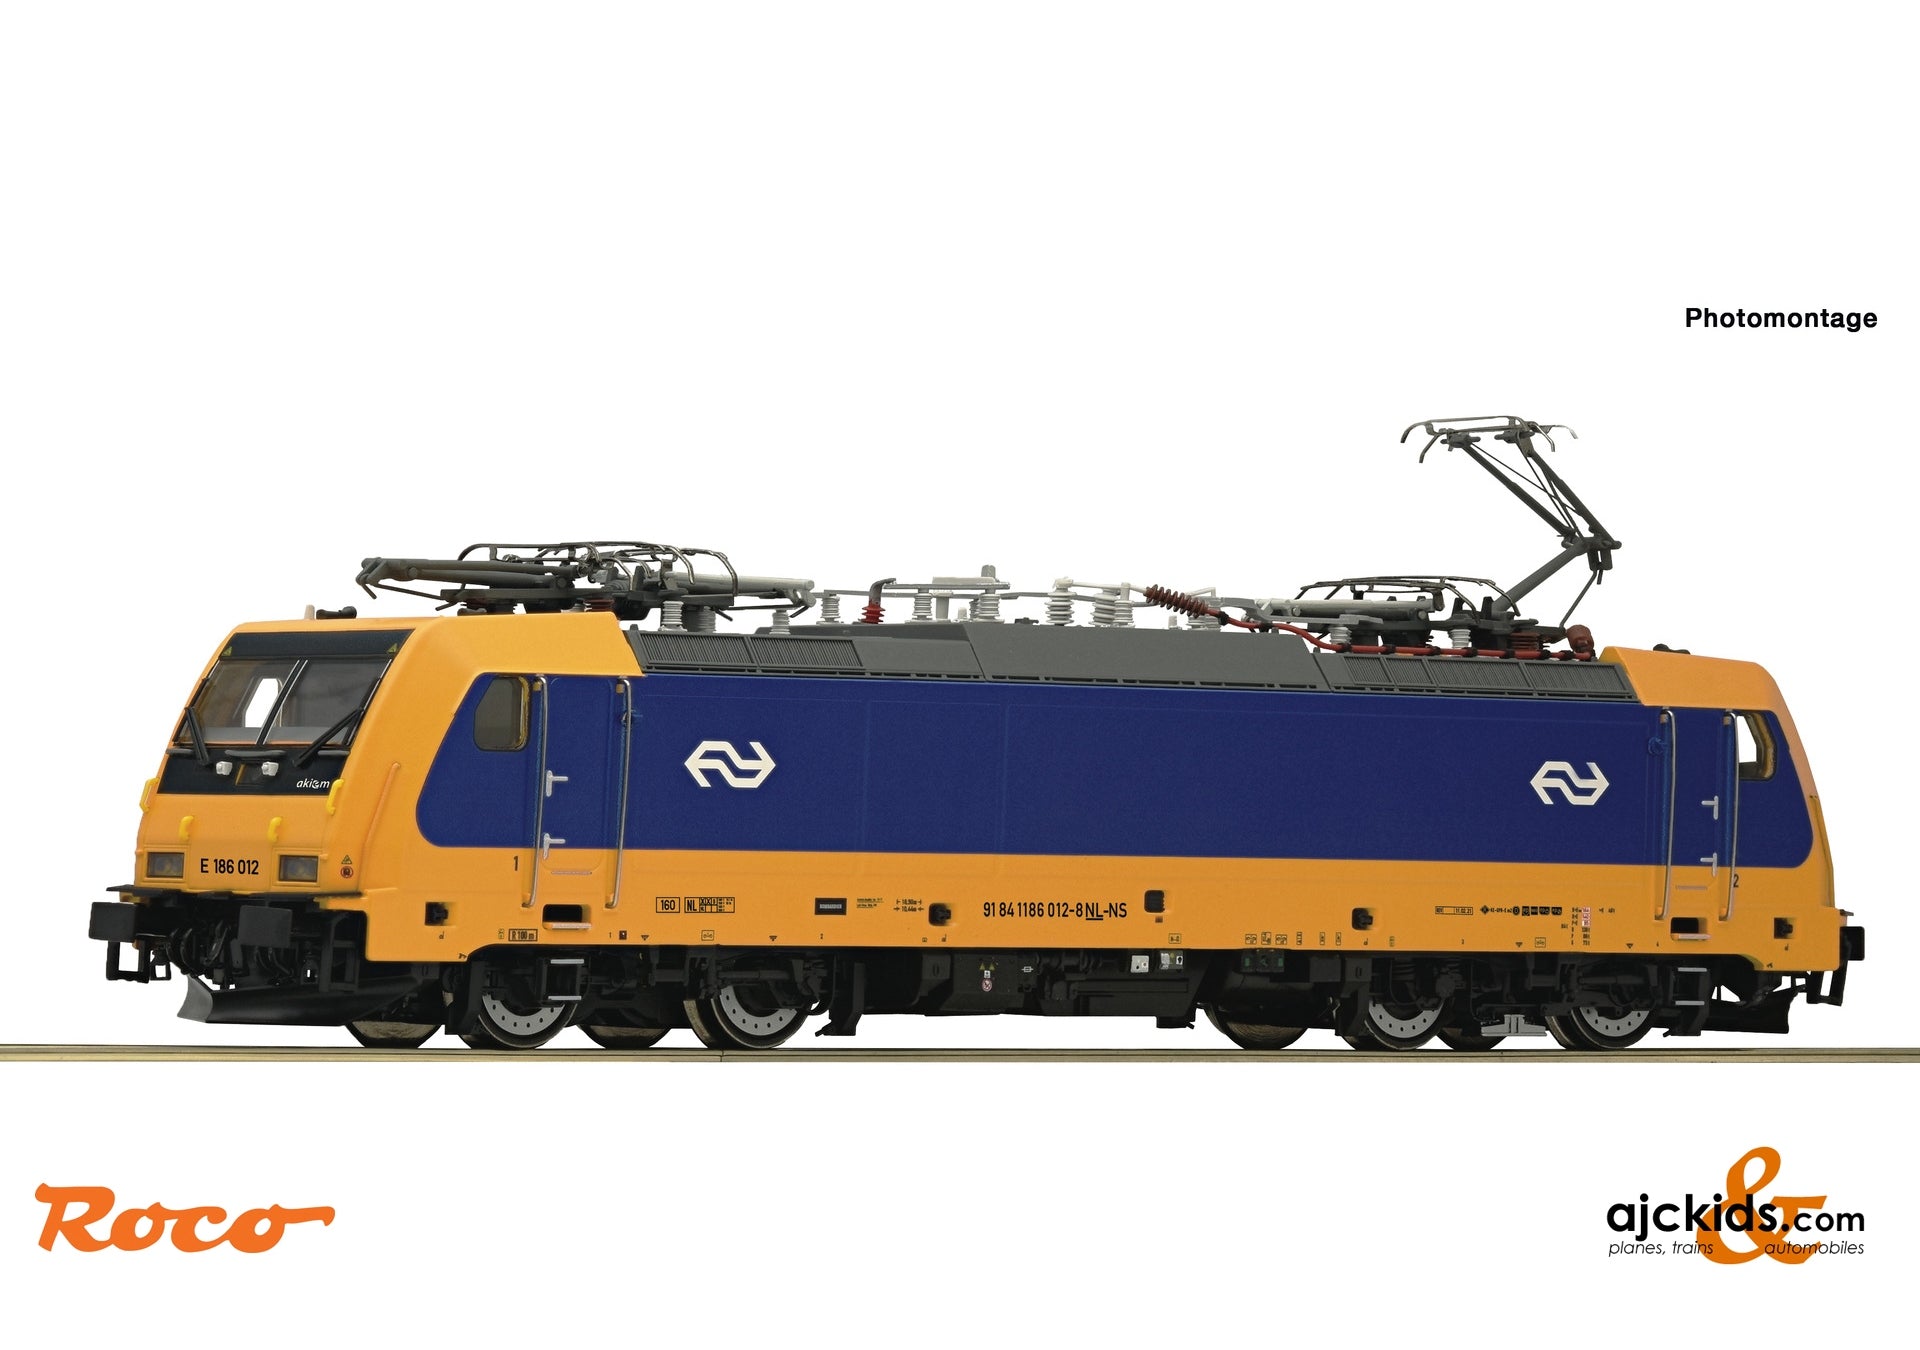 Roco 70654 - Electric locomotive E 186 012, NS at Ajckids.com